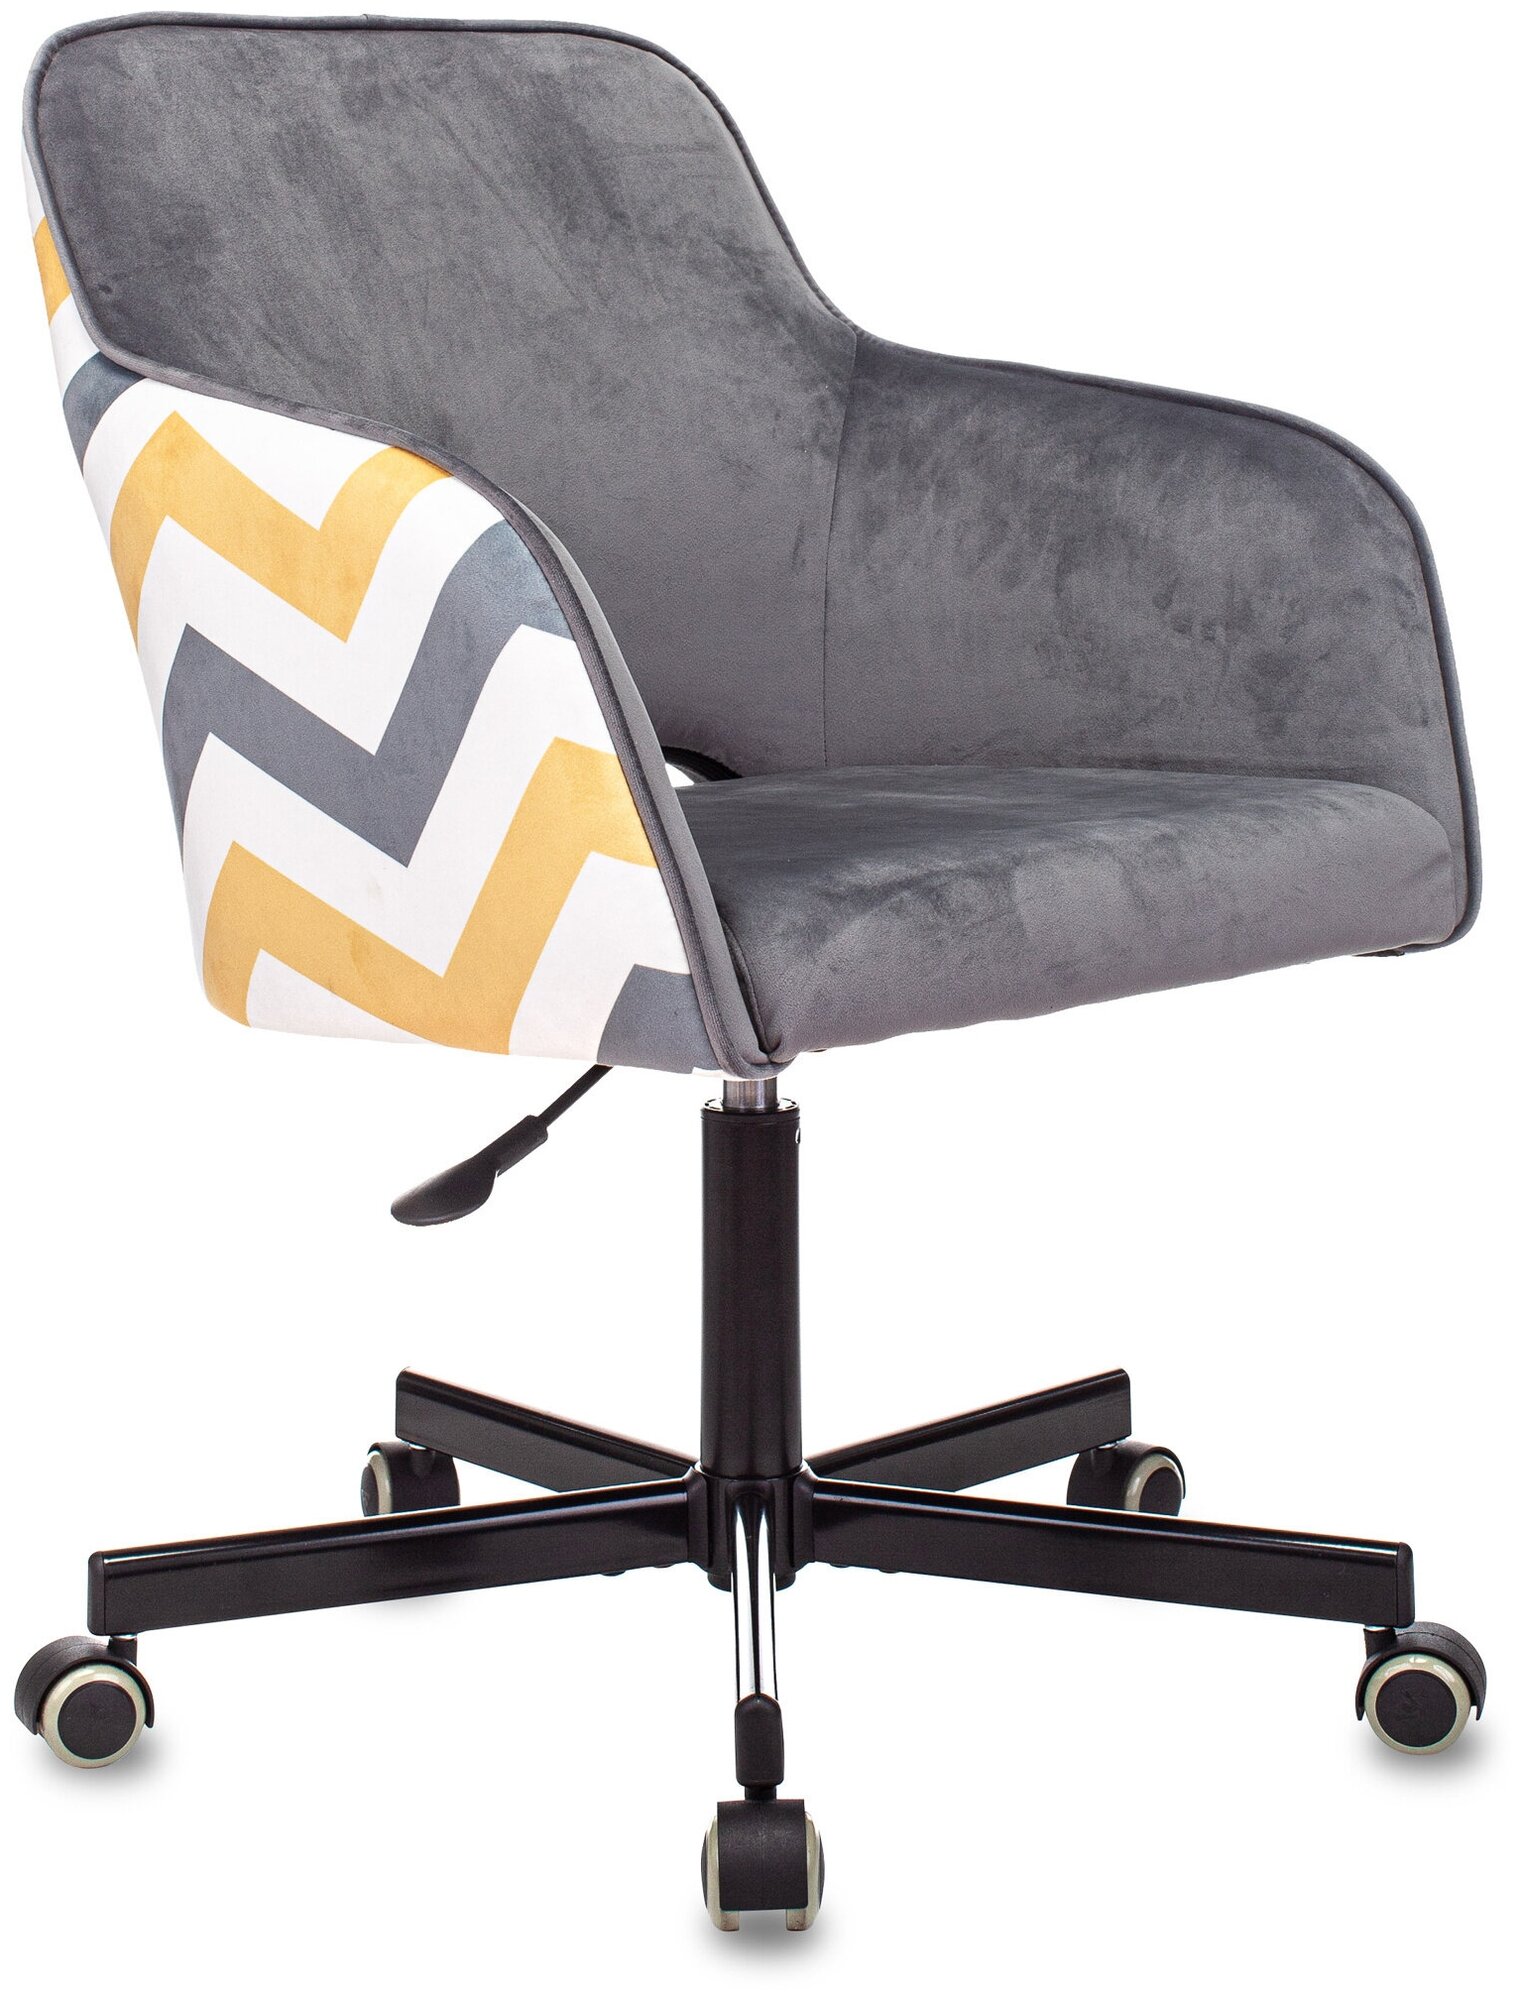 Компьютерное кресло Бюрократ CH-380M офисное, обивка: текстиль, цвет: серая жемчужина Italia 26